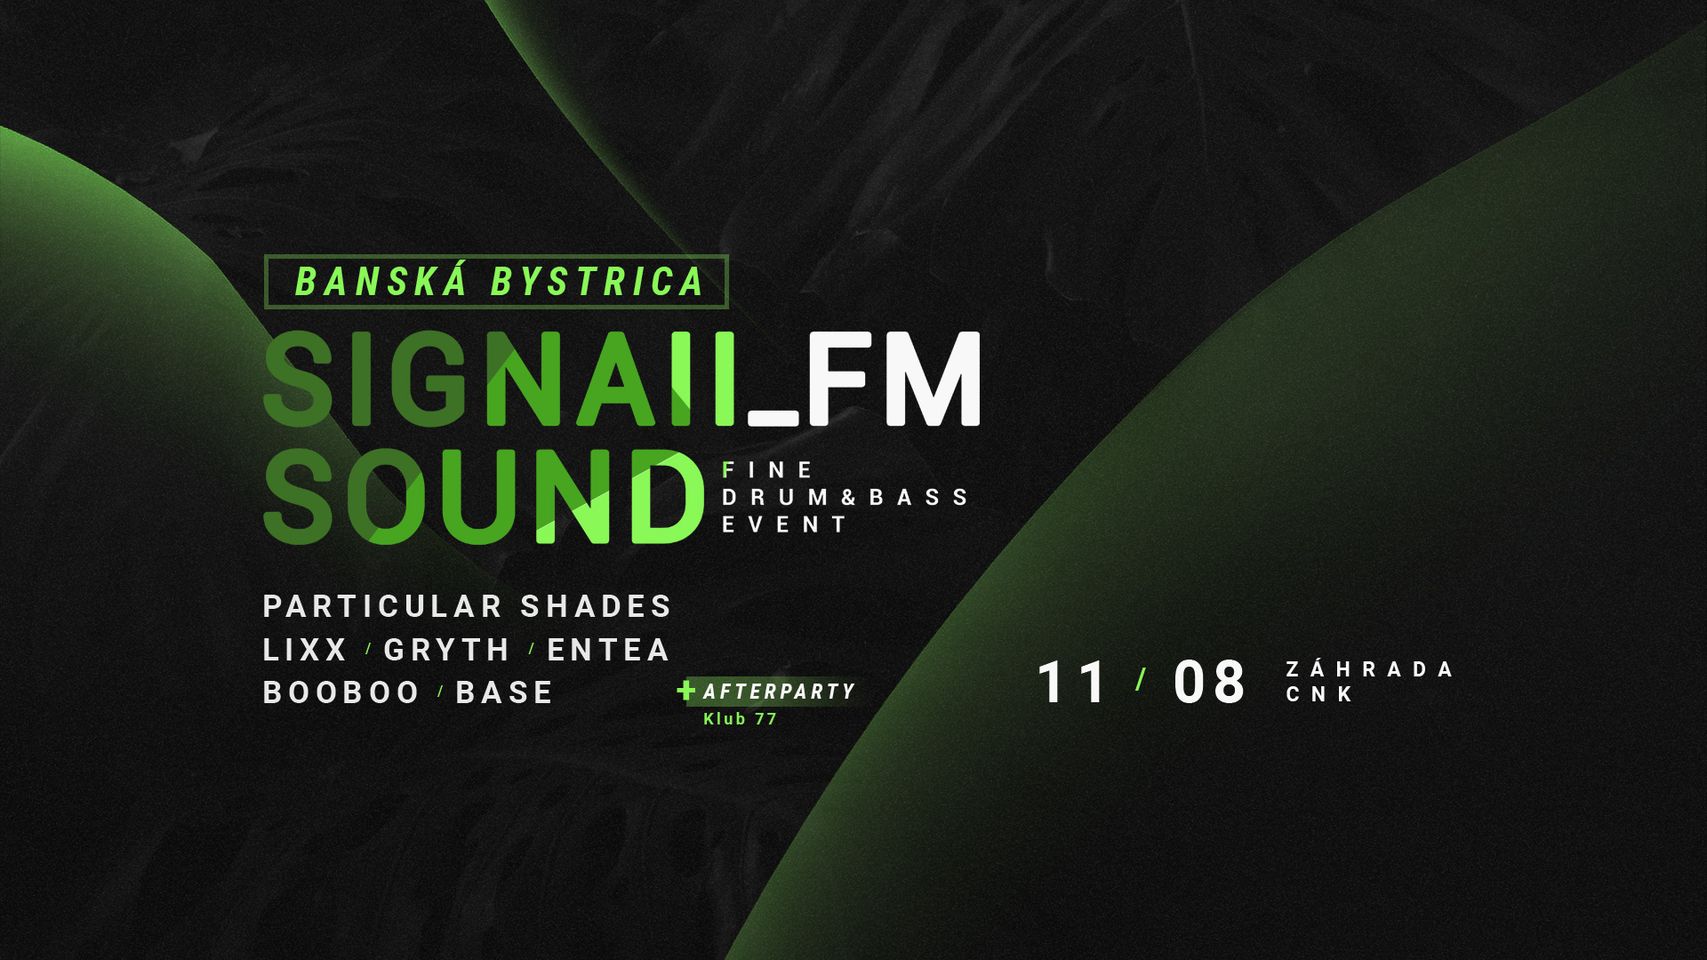 SIGNAll_FM SOUND -. @Záhrada CNK